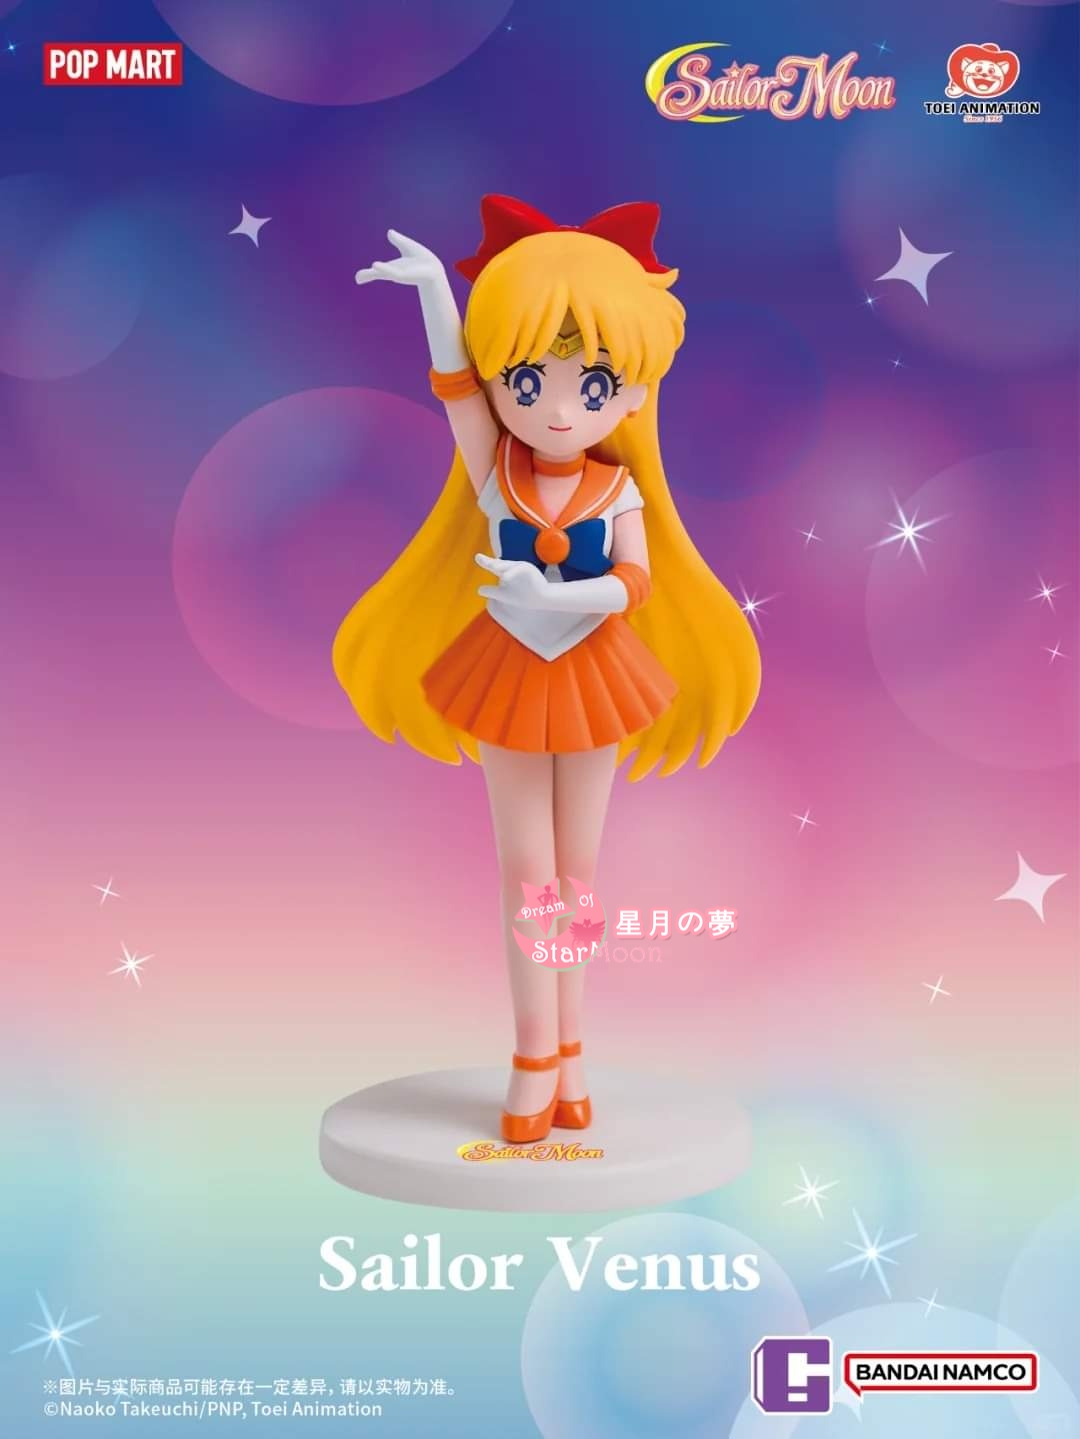 【現貨新品】美少女戰士Sailor Moon – 中國限定Pop Mart盲盒Sailor Venus公仔